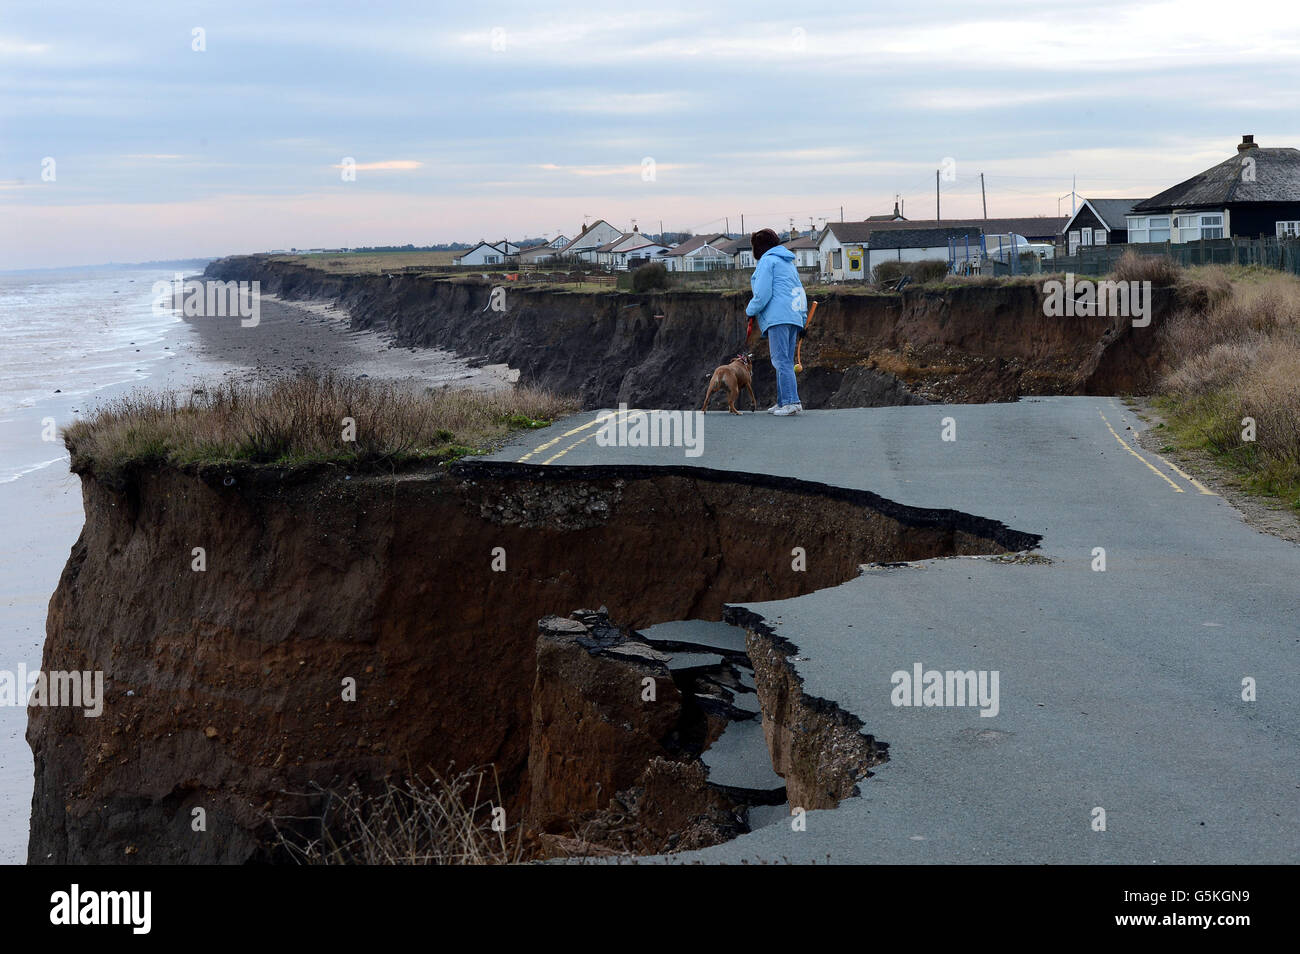 La carretera costera entre Skipsea y Ulrome se derrumba en el Mar del Norte. Foto de stock